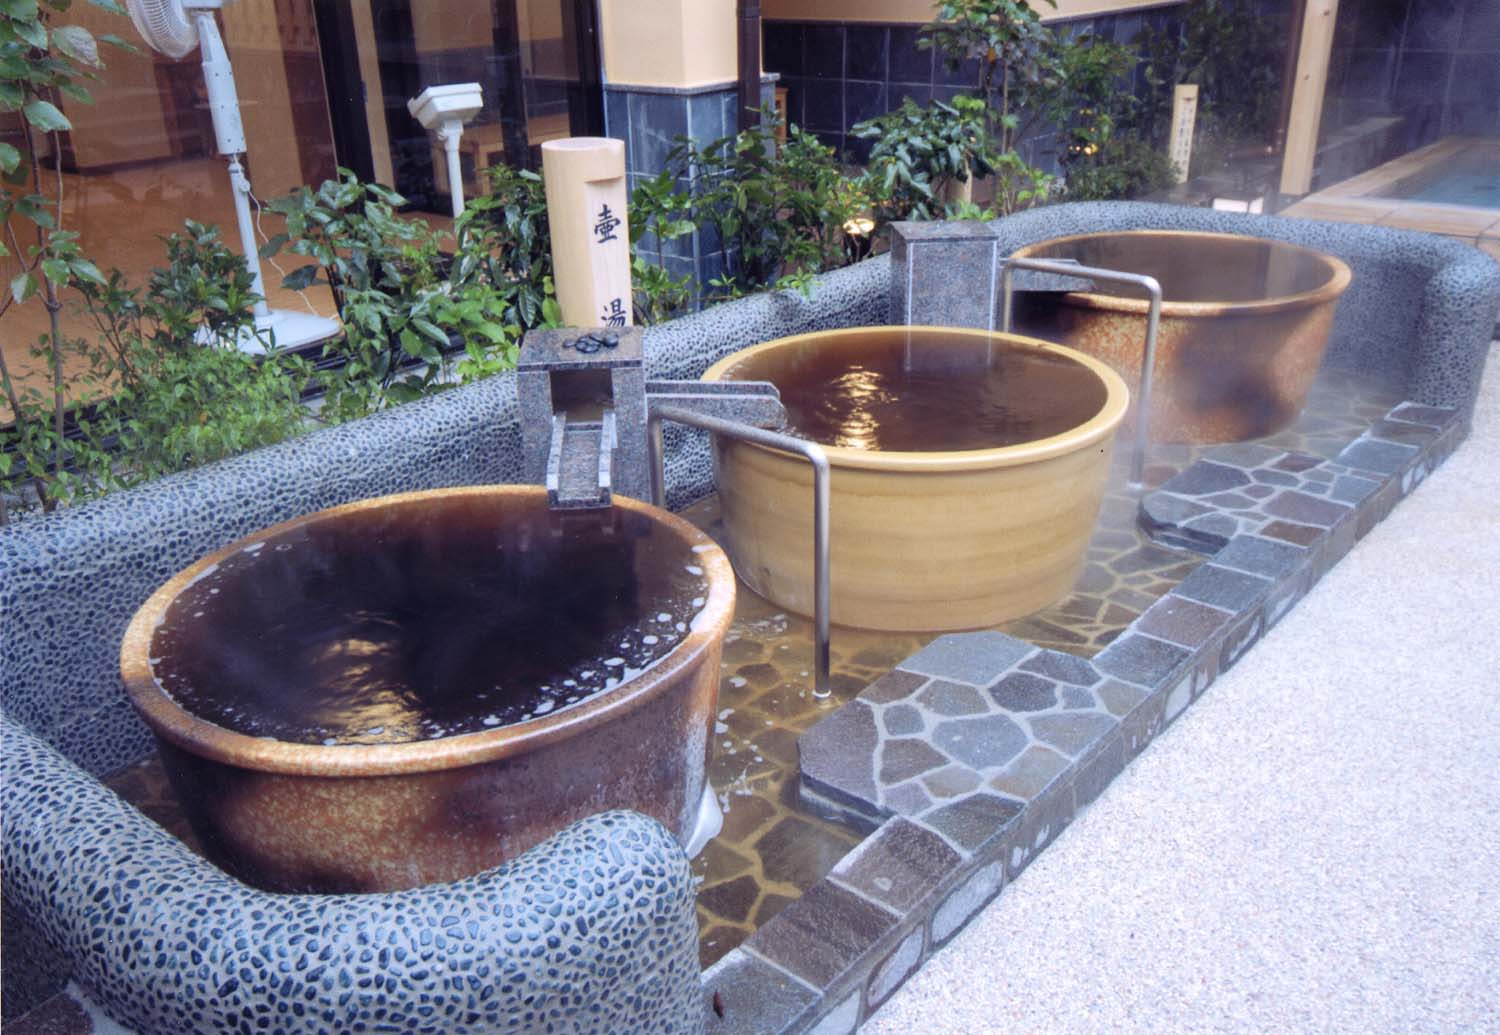 壺湯では、大きな壺を独り占めする贅沢な湯浴みができる。